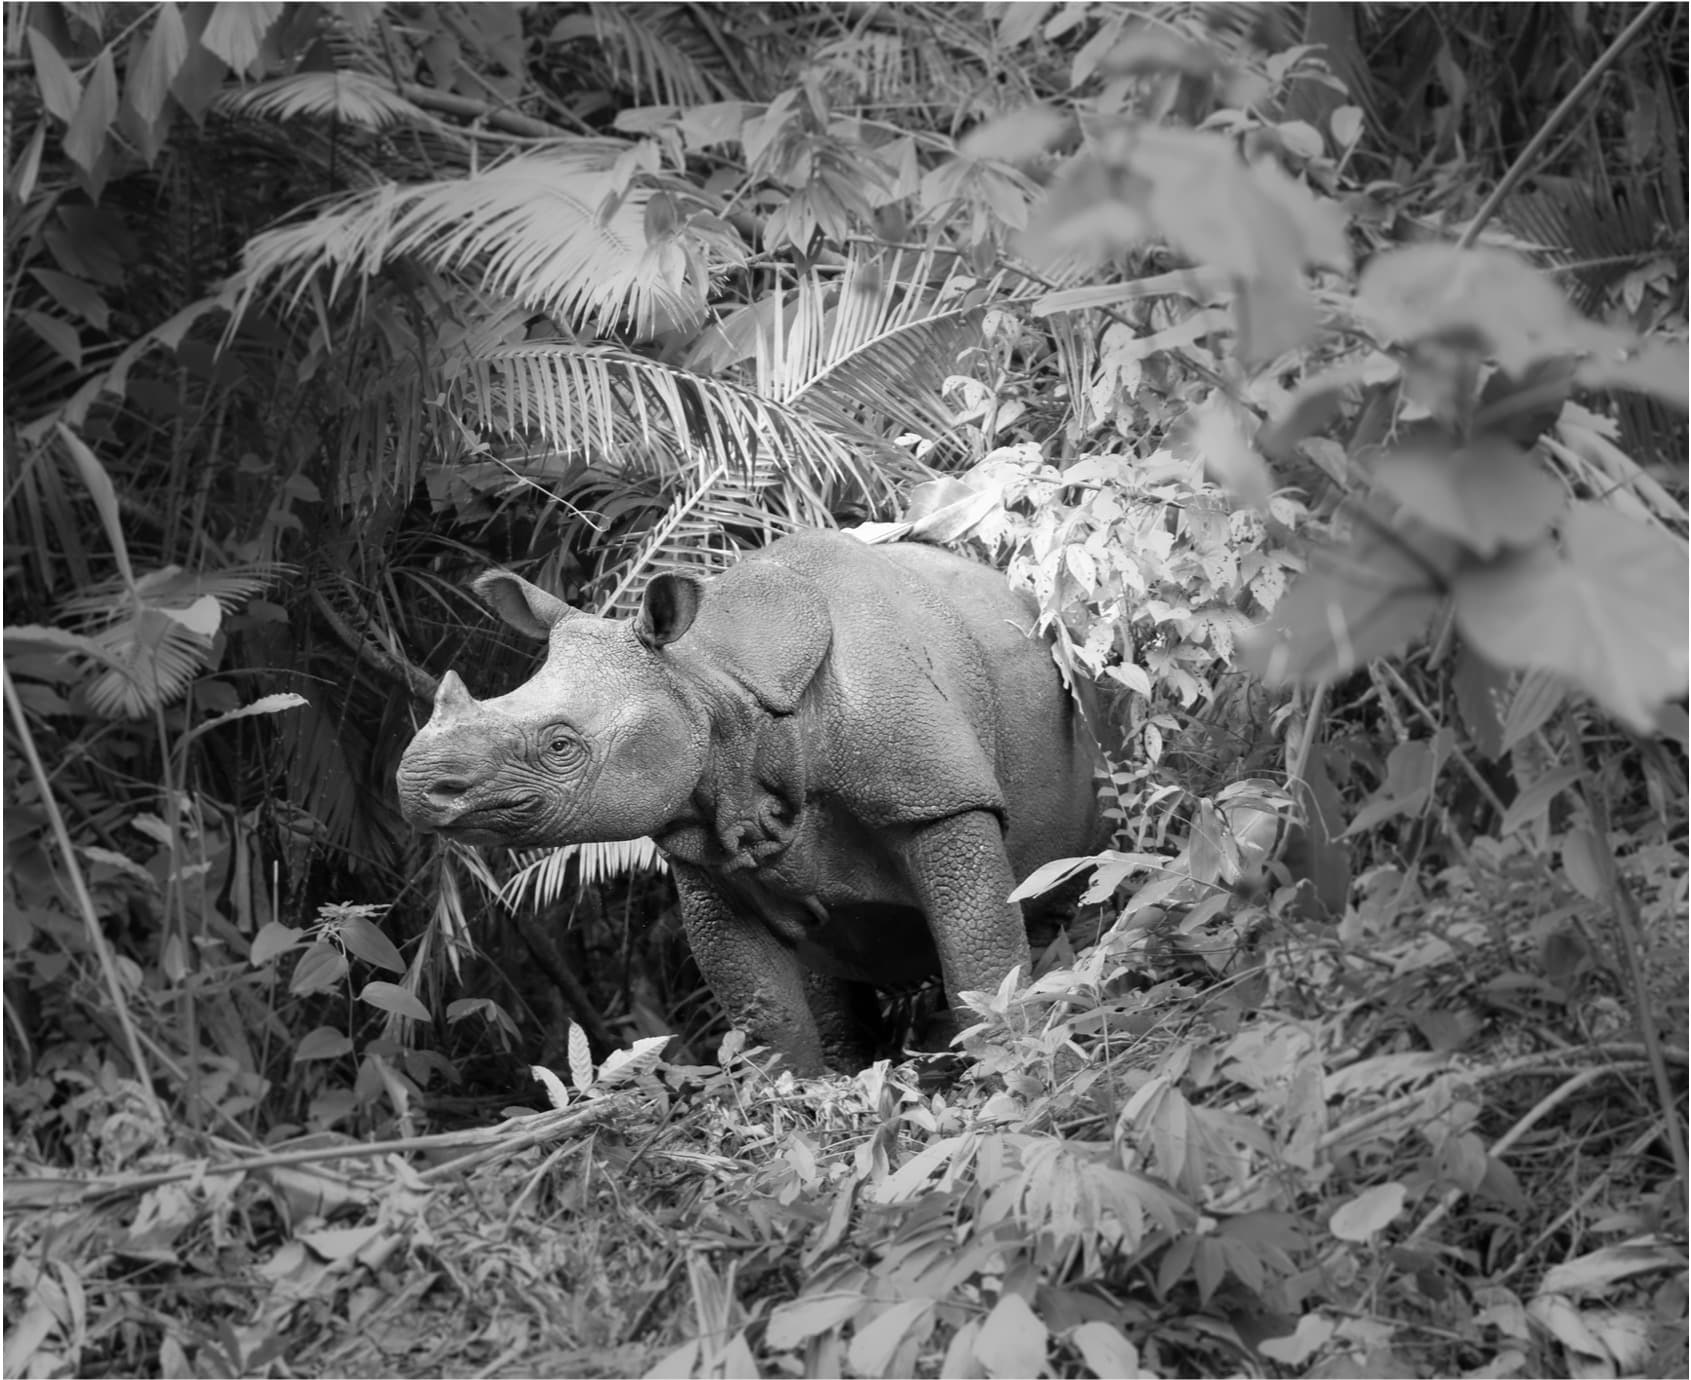 Javan Rhino in Indonesia. © Tobias Nolan